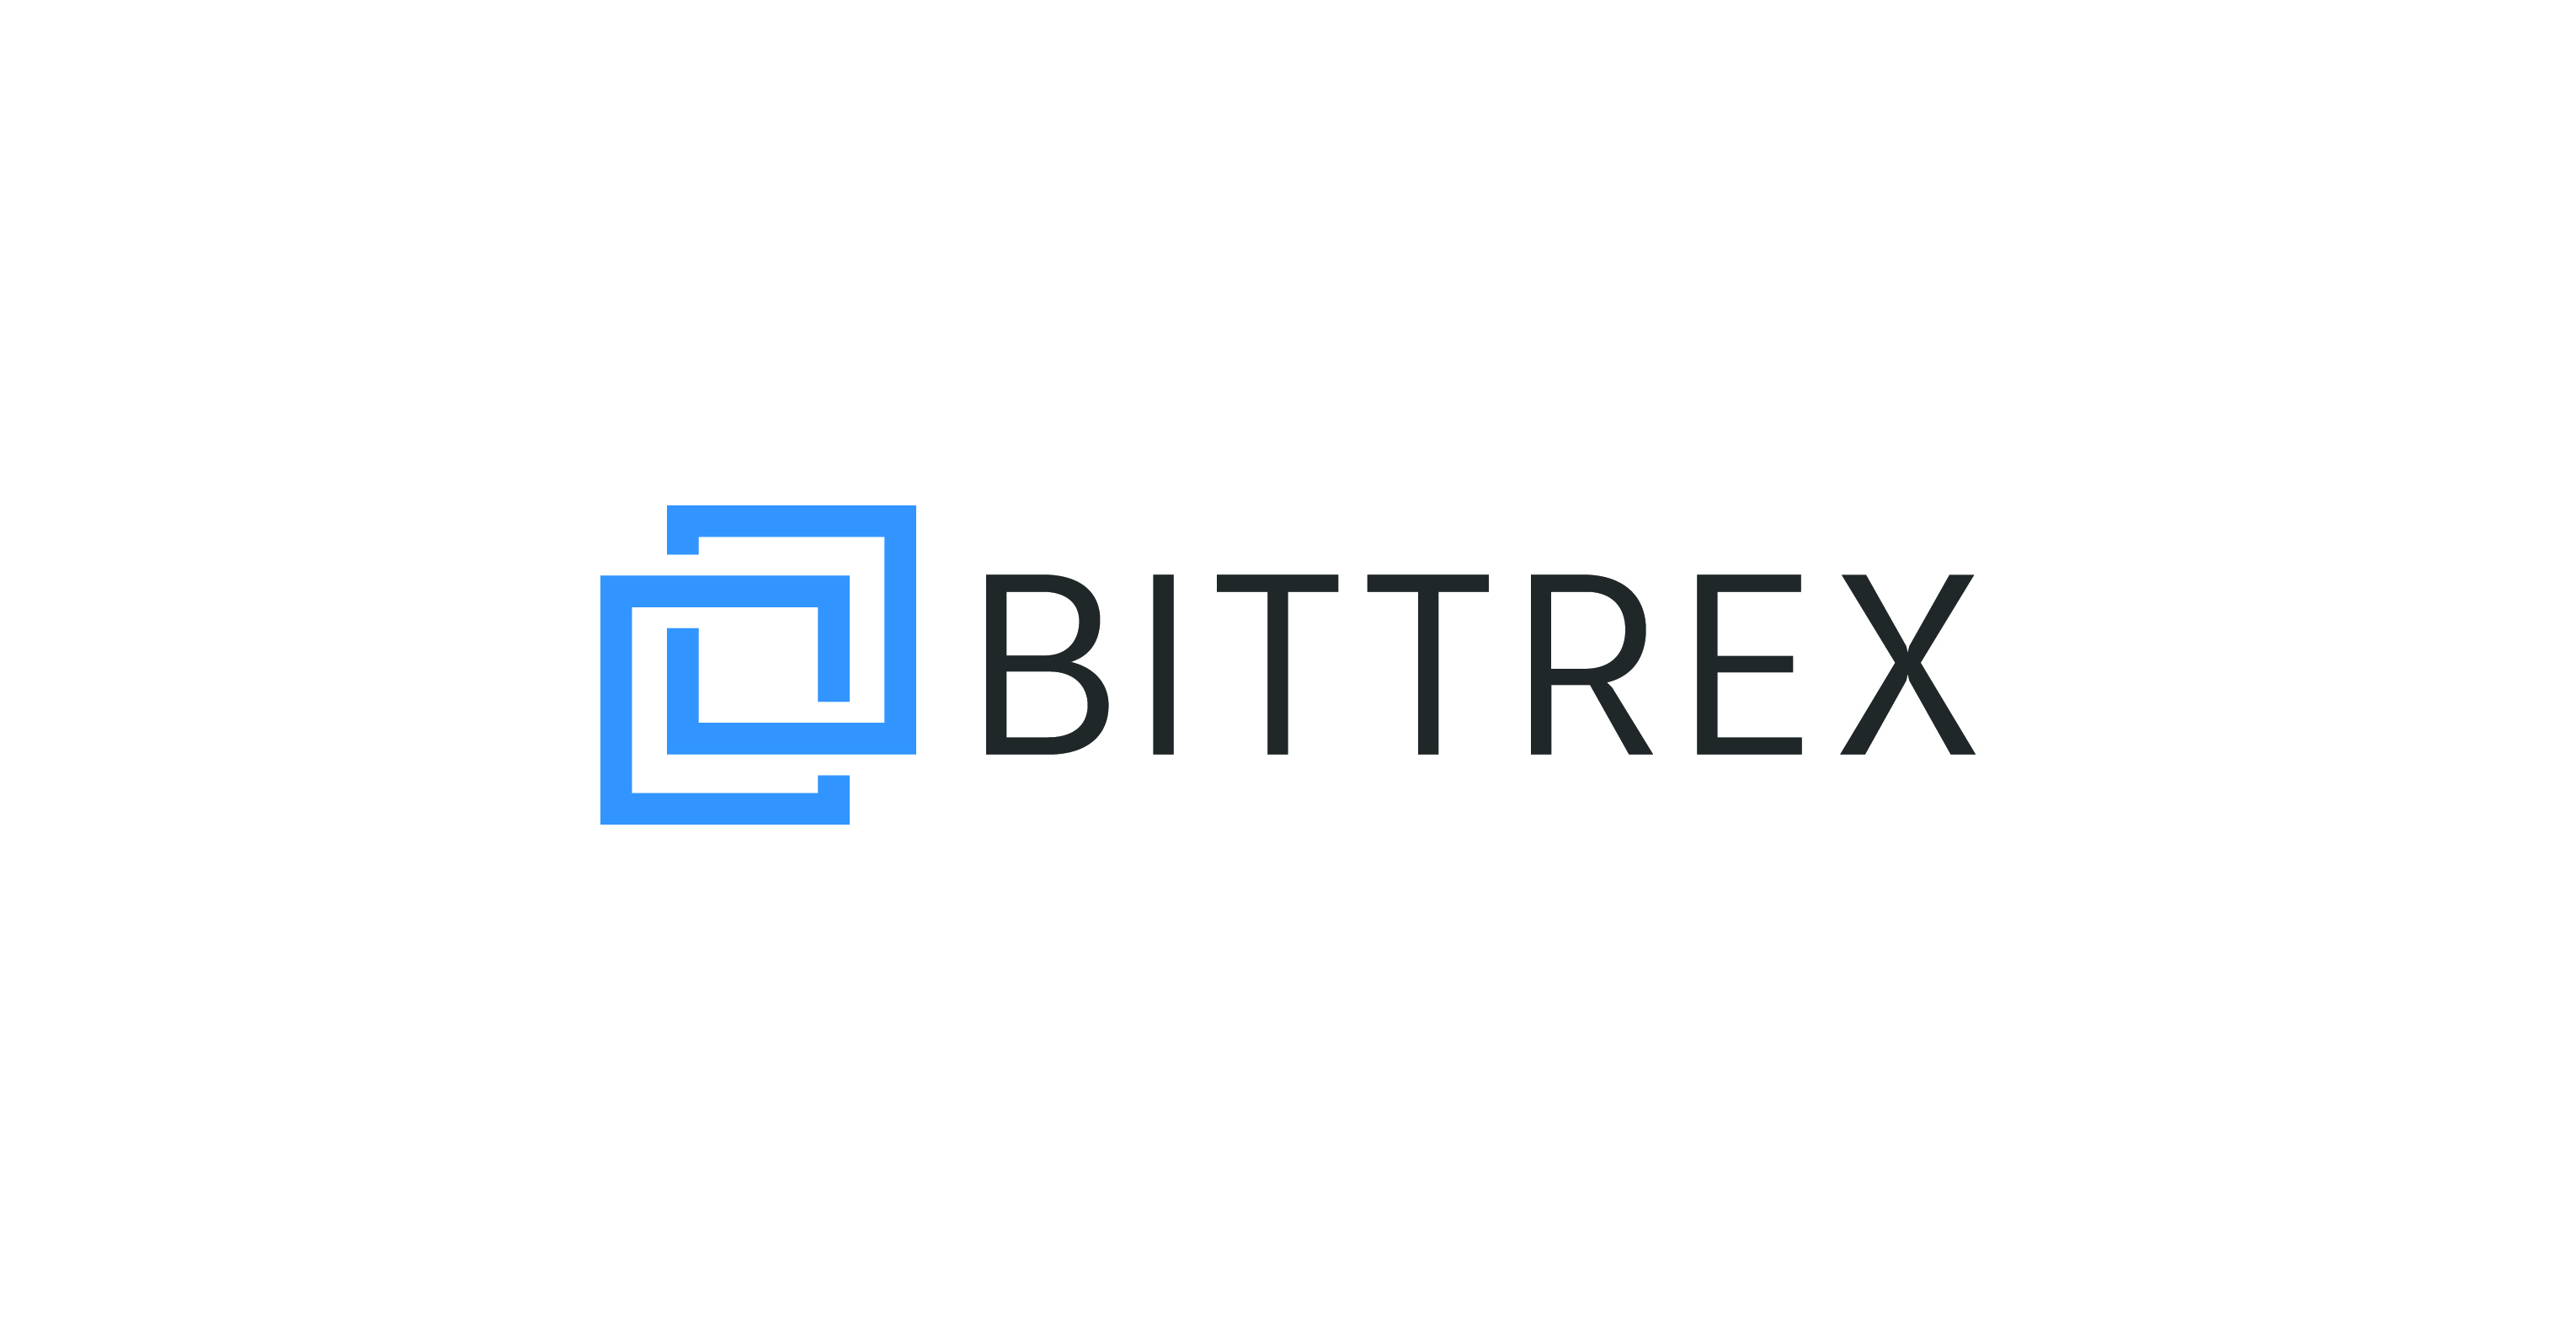 bittrex logo